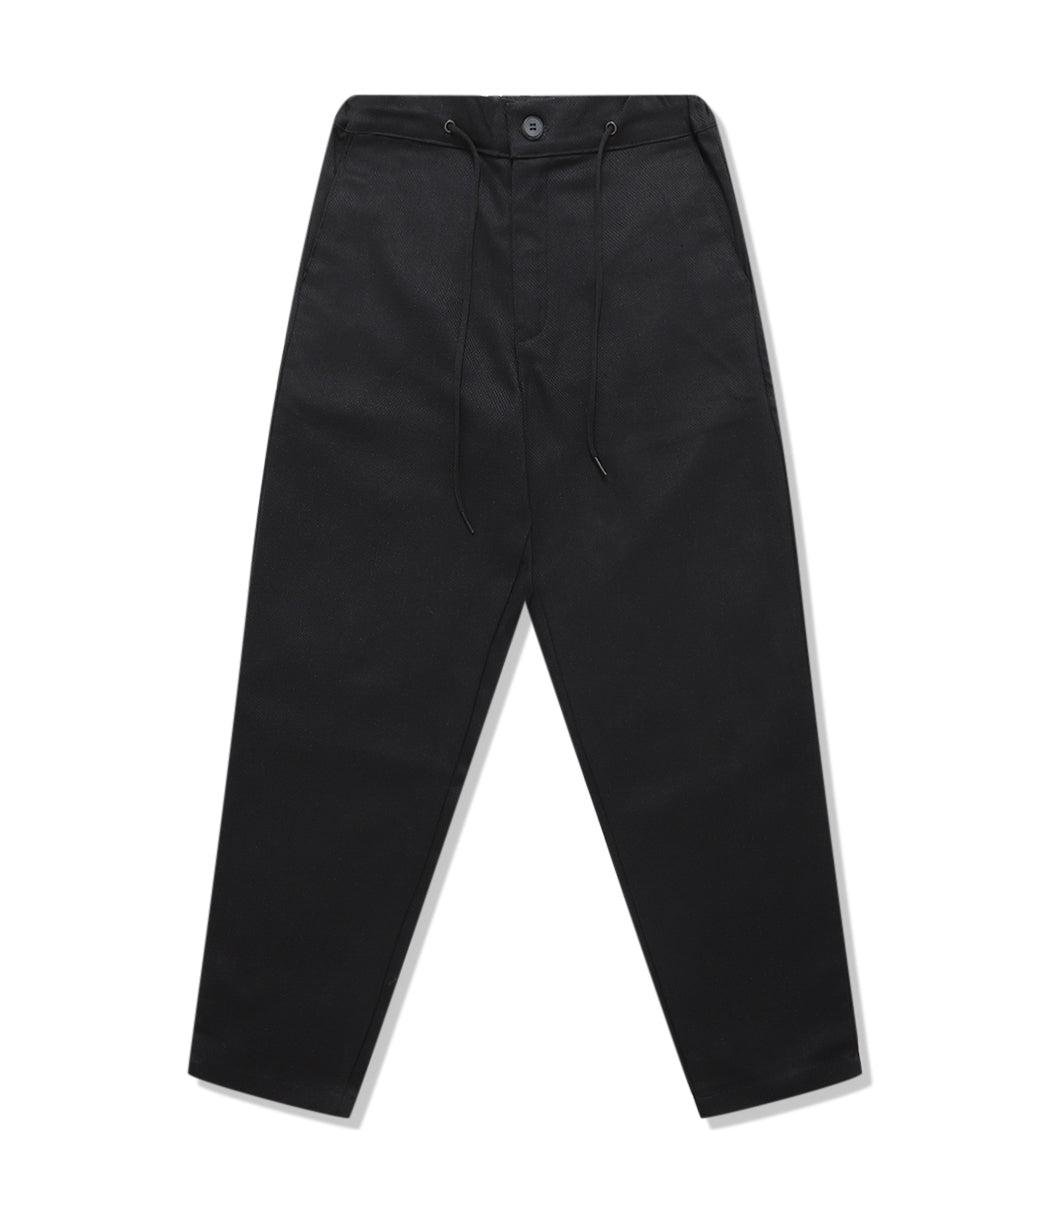 Wafer Black Pants Size Xl